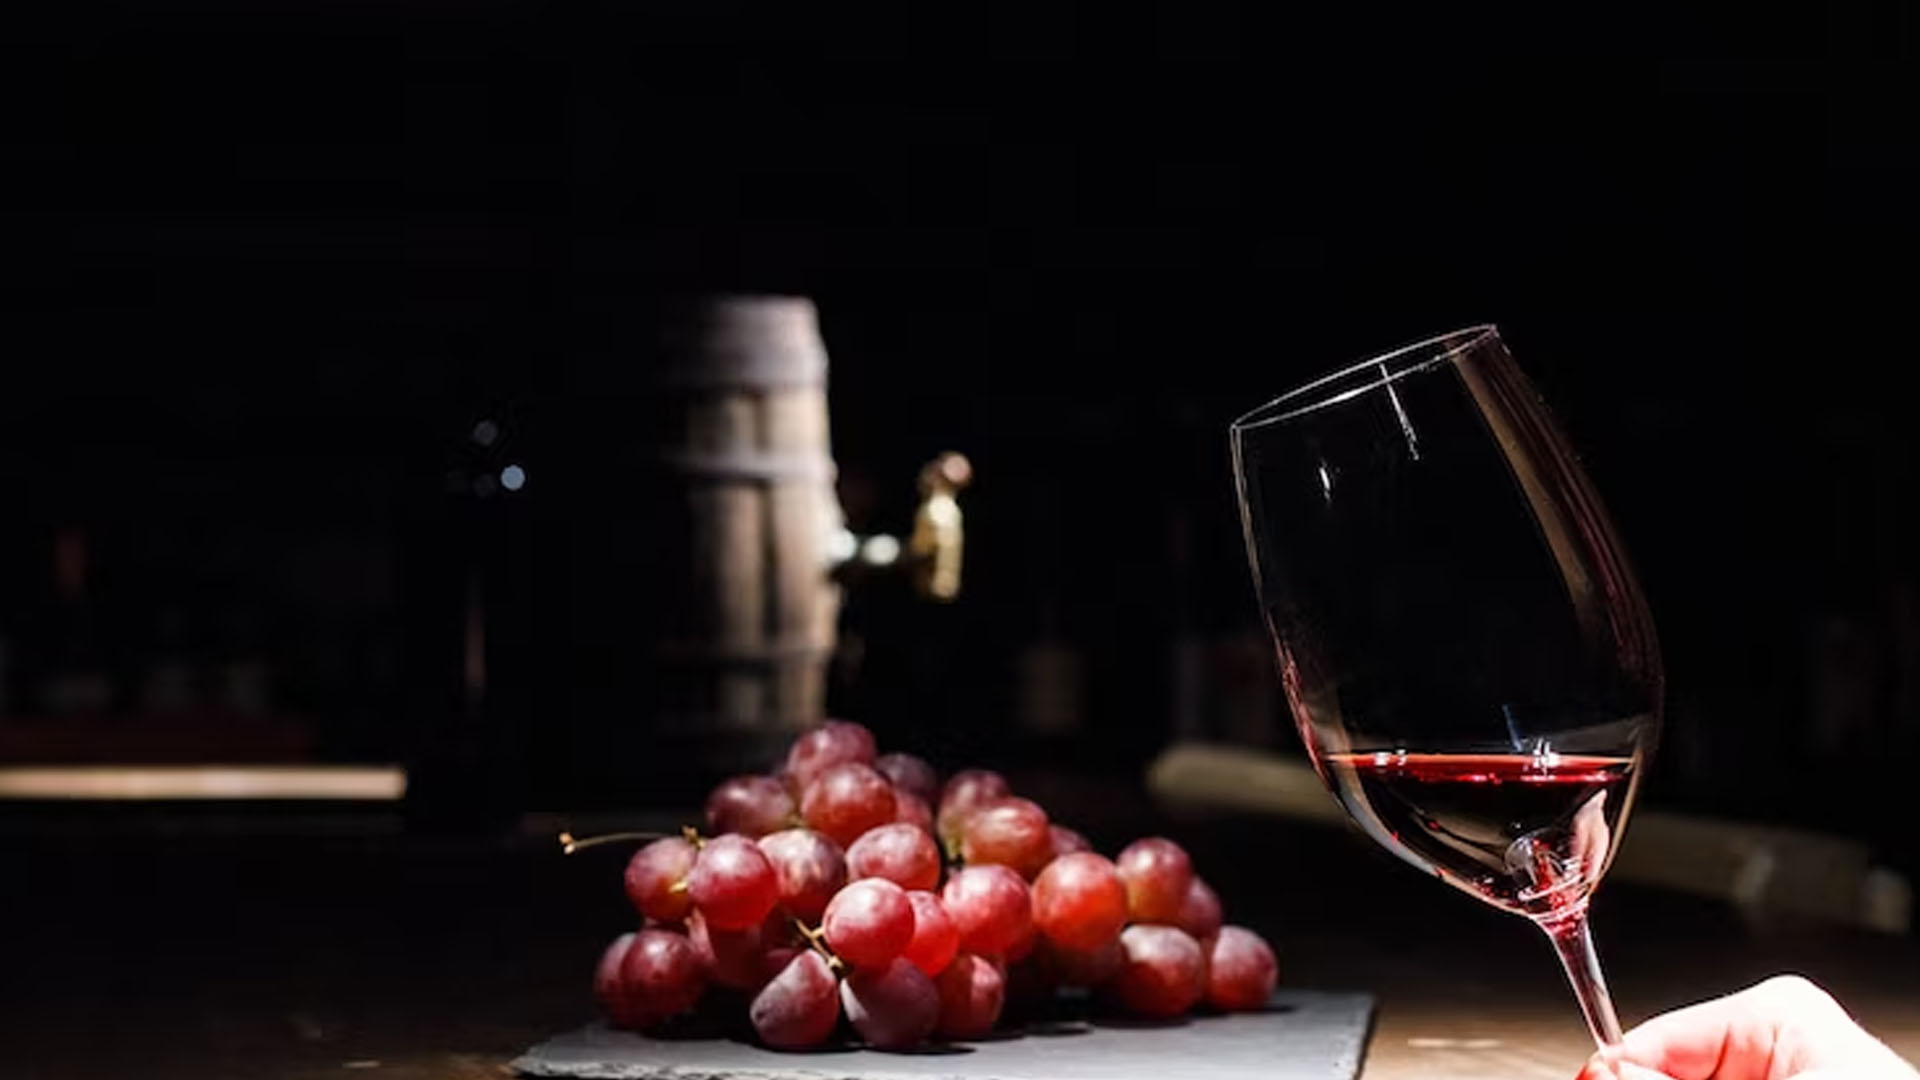 Do Port Wine Has any Health Benefits?